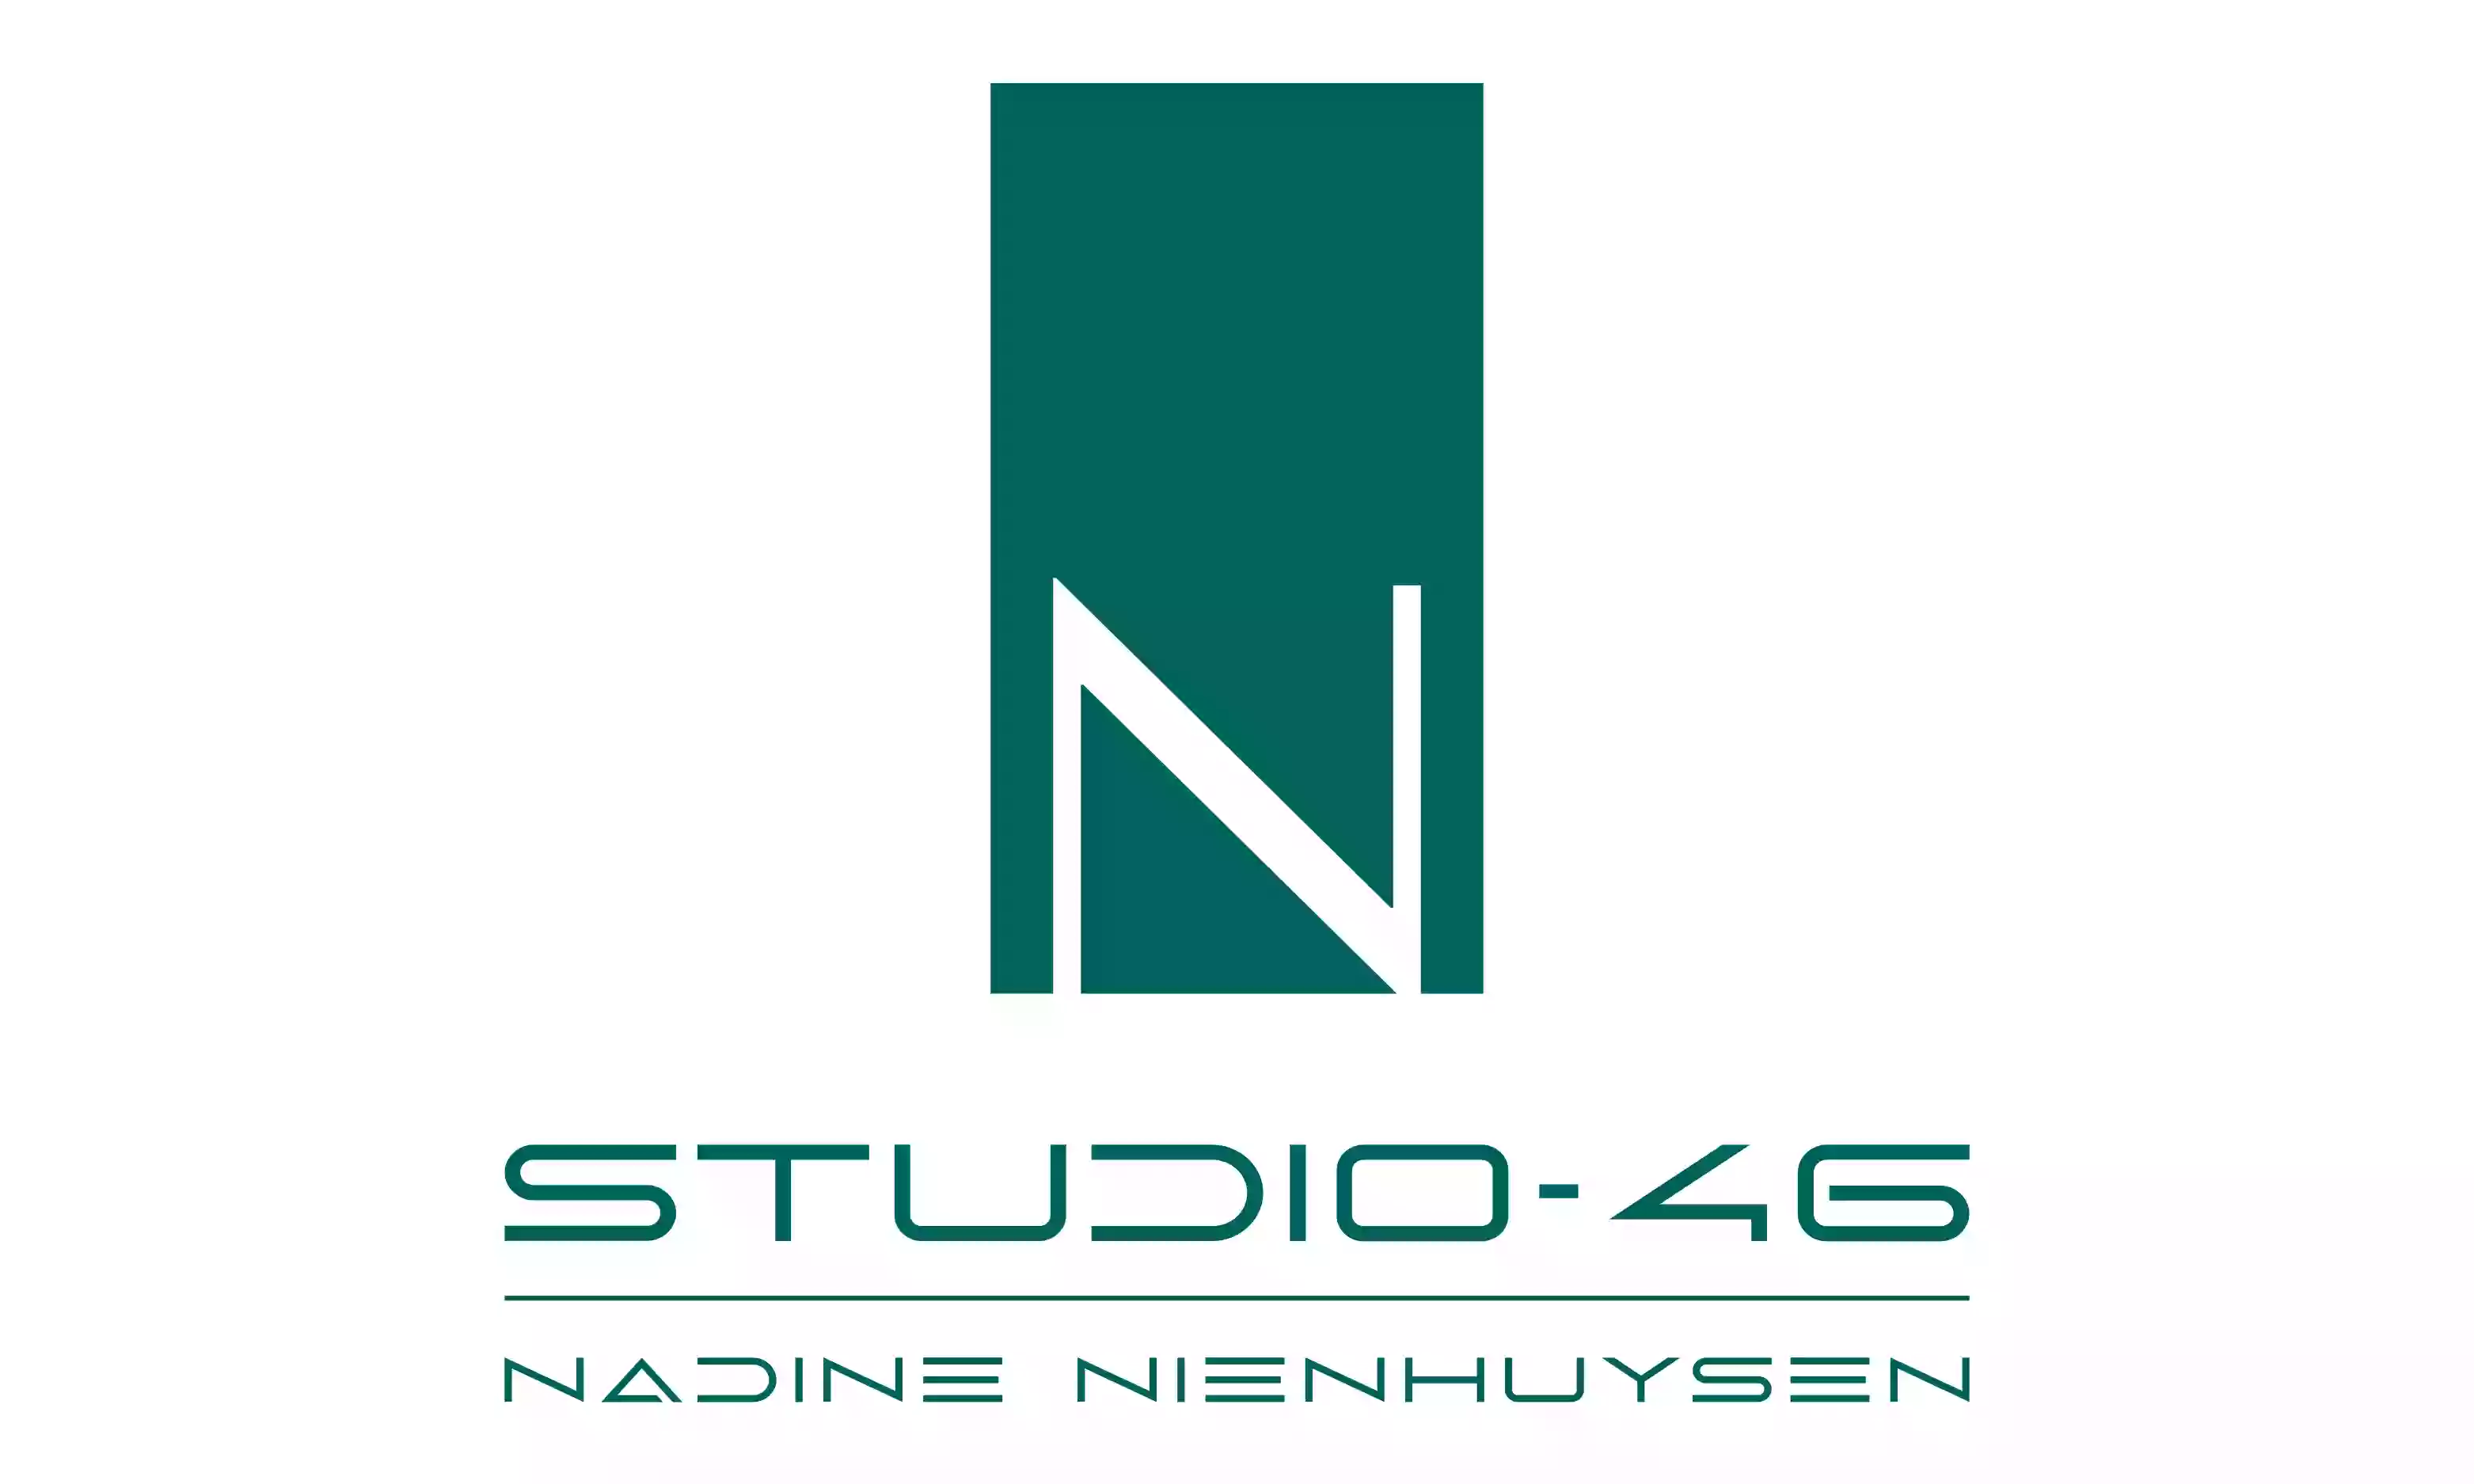 Studio-46